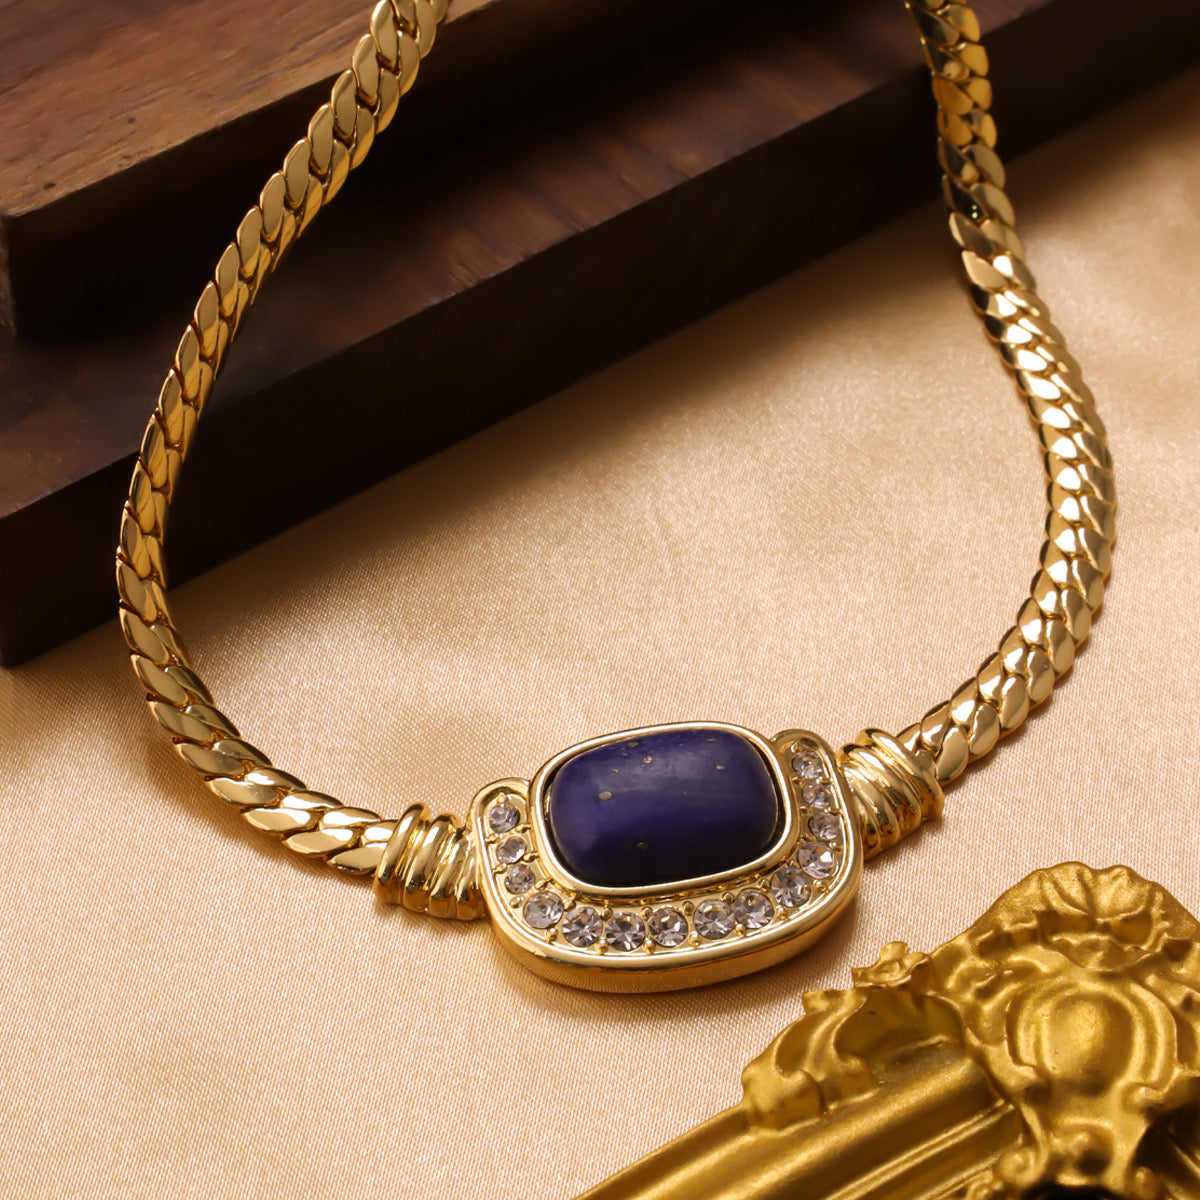 Natural Lapis lazuli necklace